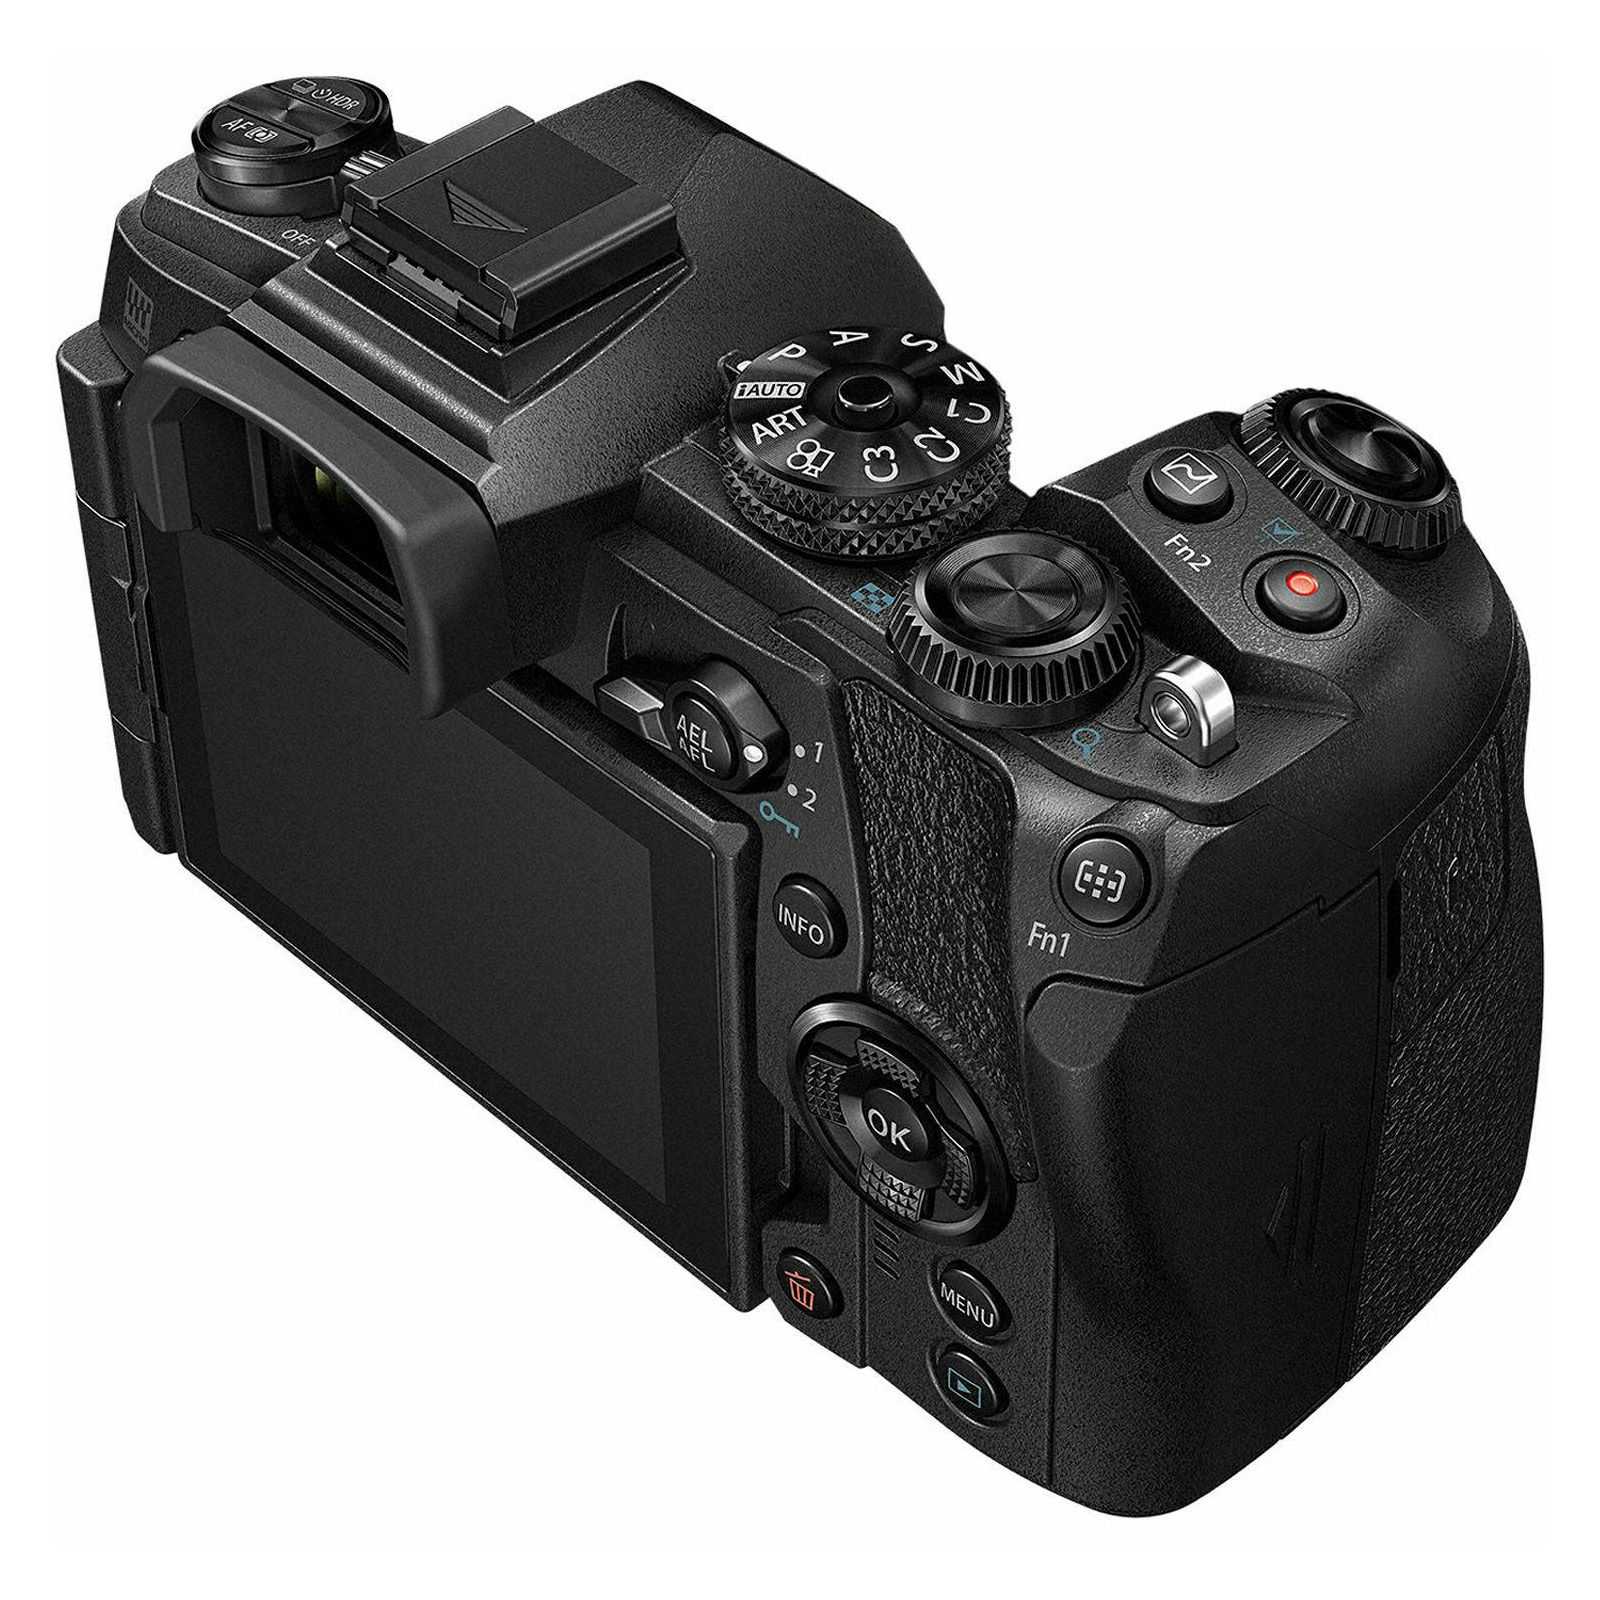 Цифровой фотоаппарат Olympus OM-D E-M1 body - подробные характеристики обзоры видео фото Цены в интернет-магазинах где можно купить цифровую фотоаппарат Olympus OM-D E-M1 body